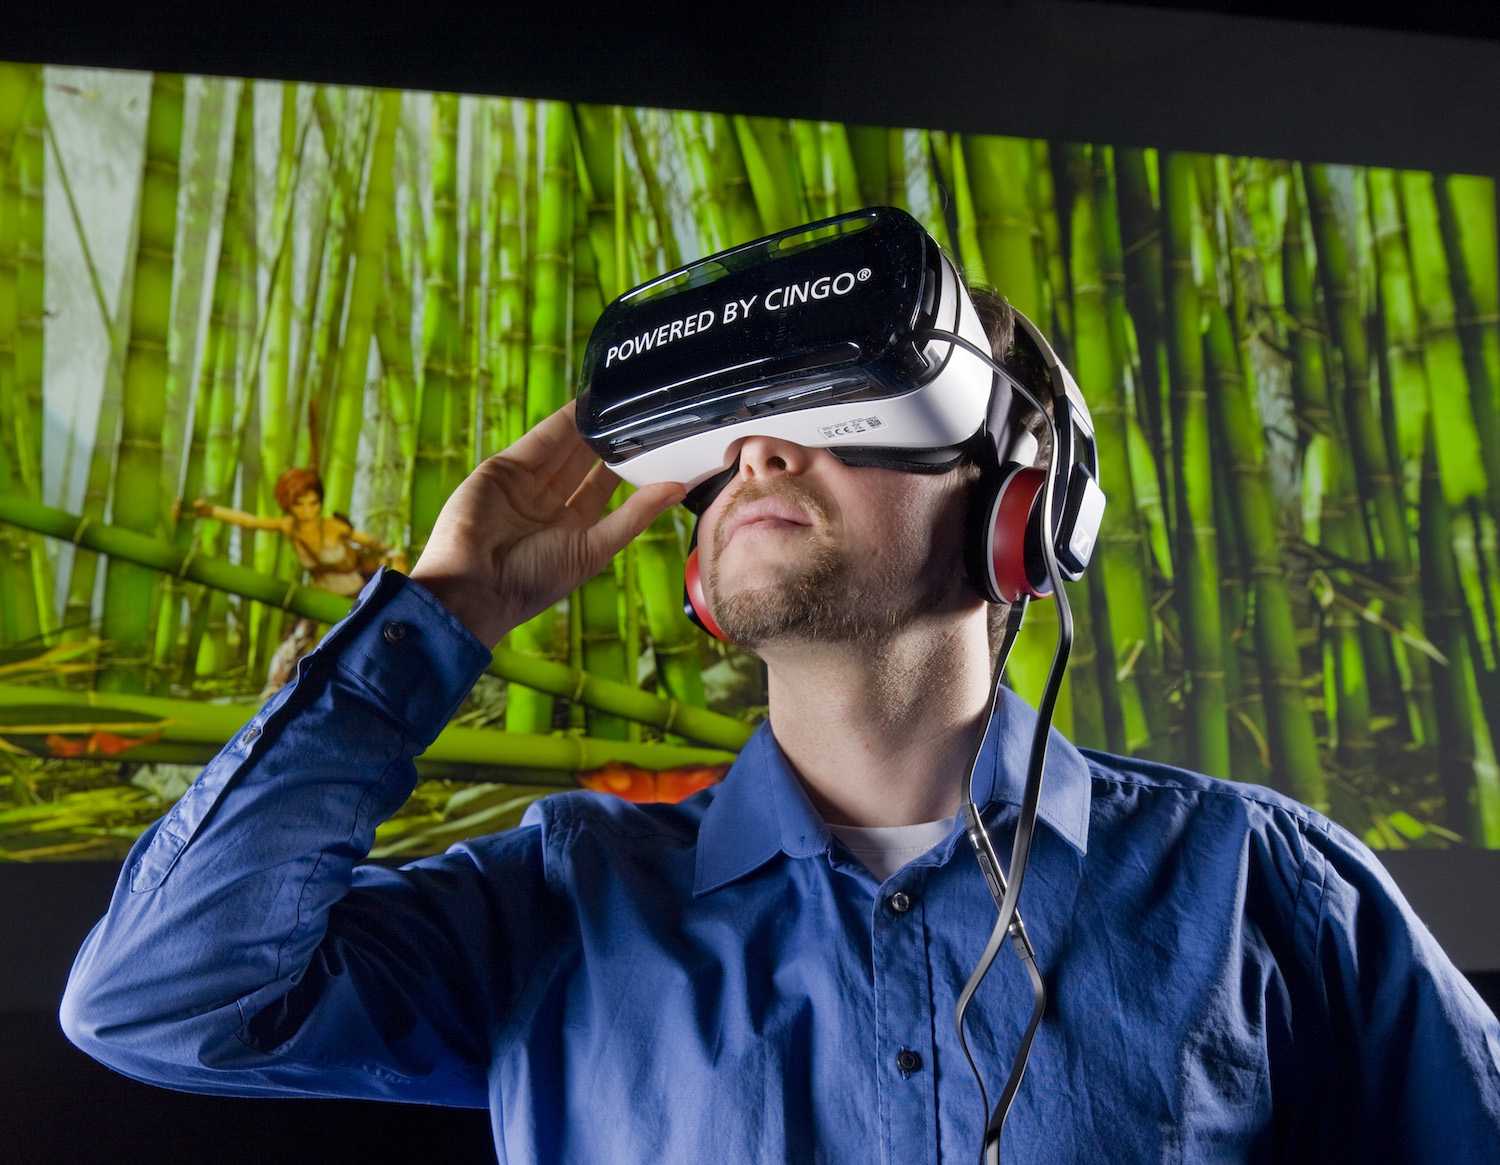 Выбрал виртуальный мир. VR виртуальная реальность. Виртуальная реальность без погружения. Человек в виртуальной реальности. Очки виртуальной реальности на человеке.